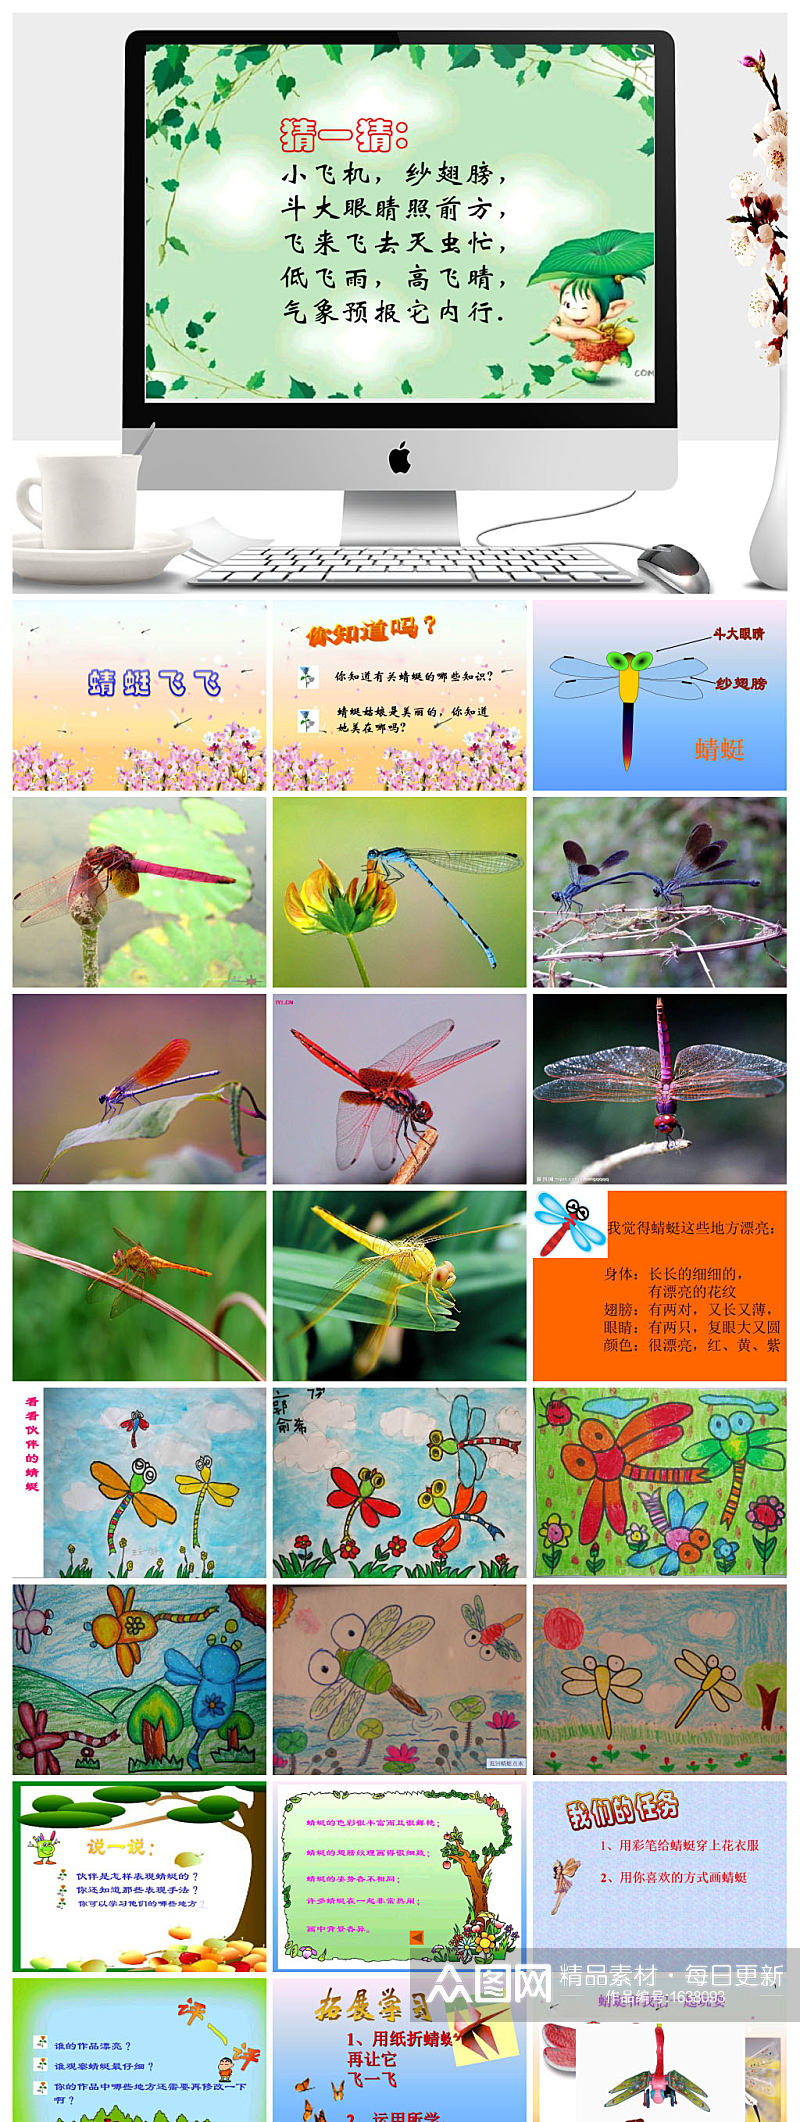 蜻蜓飞飞 美术ppt课件素材